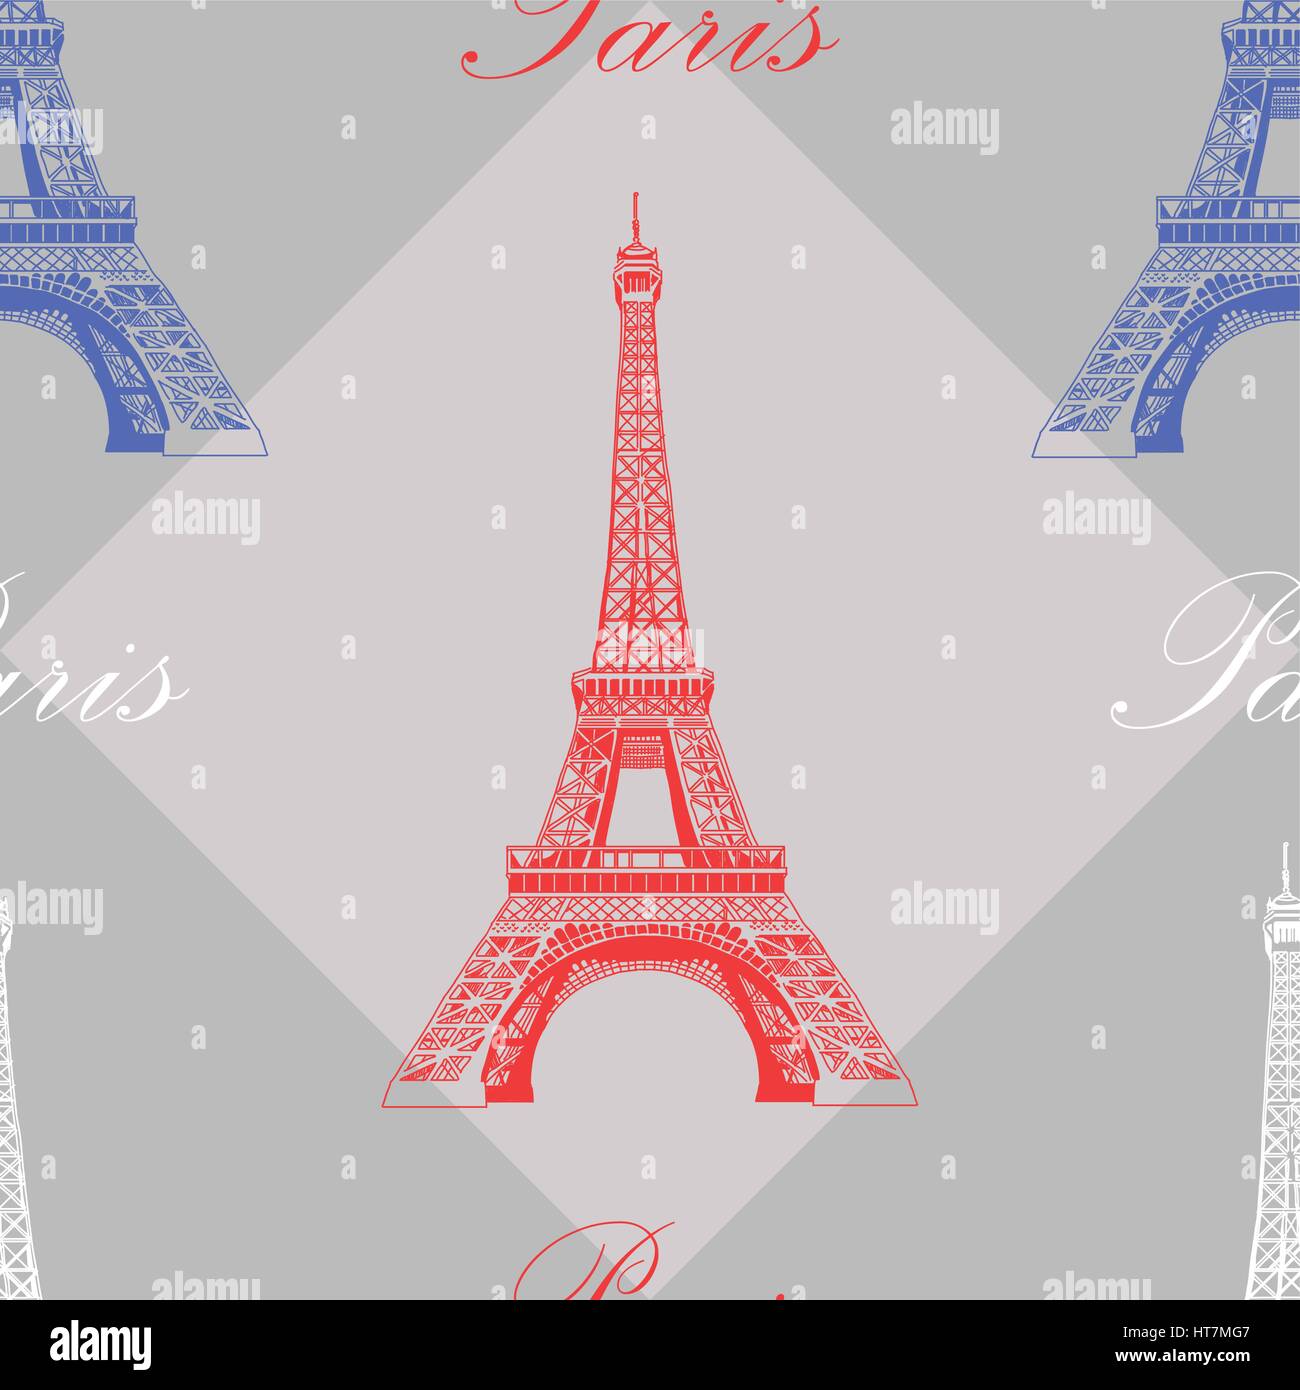 Avec motif transparent rouge, bleu et blanc de la tour Eiffel sur fond gris Illustration de Vecteur